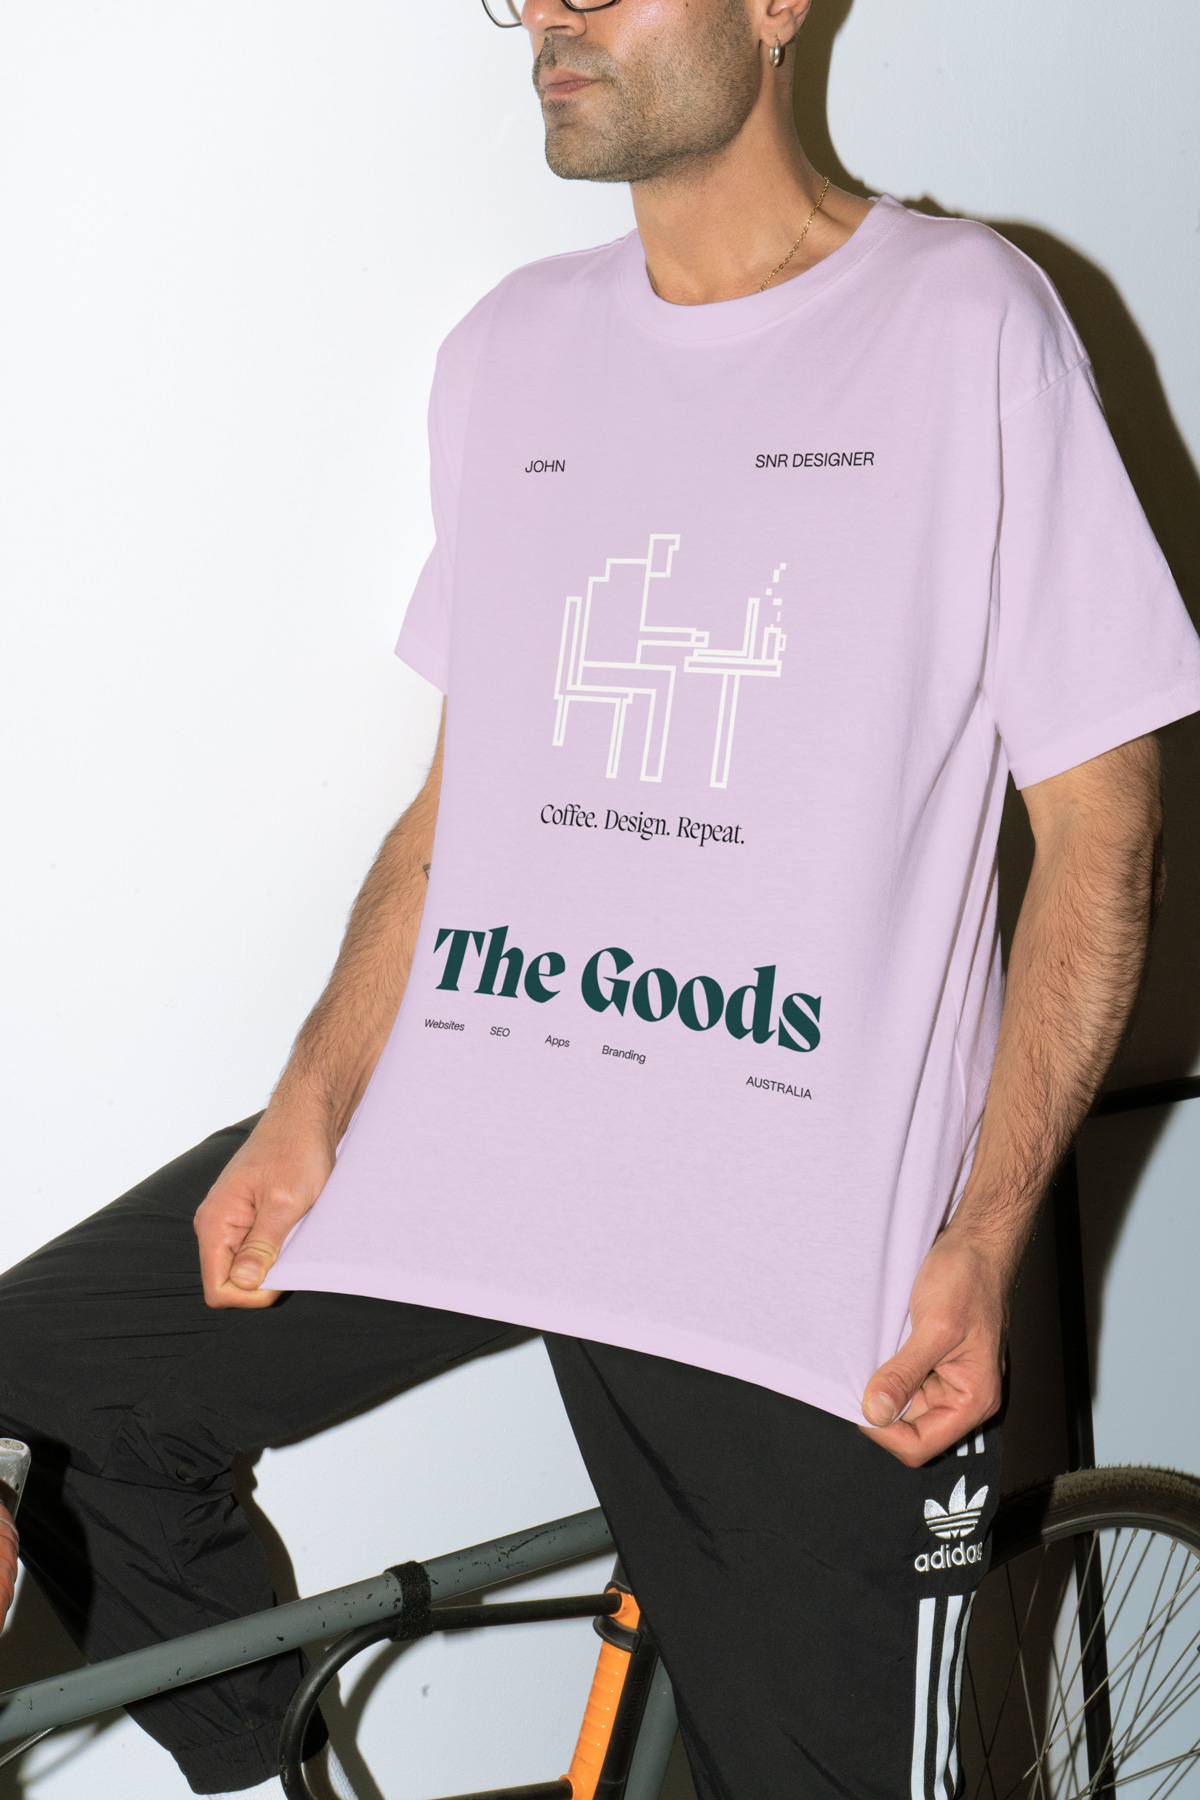 The Goods T Shirt Design